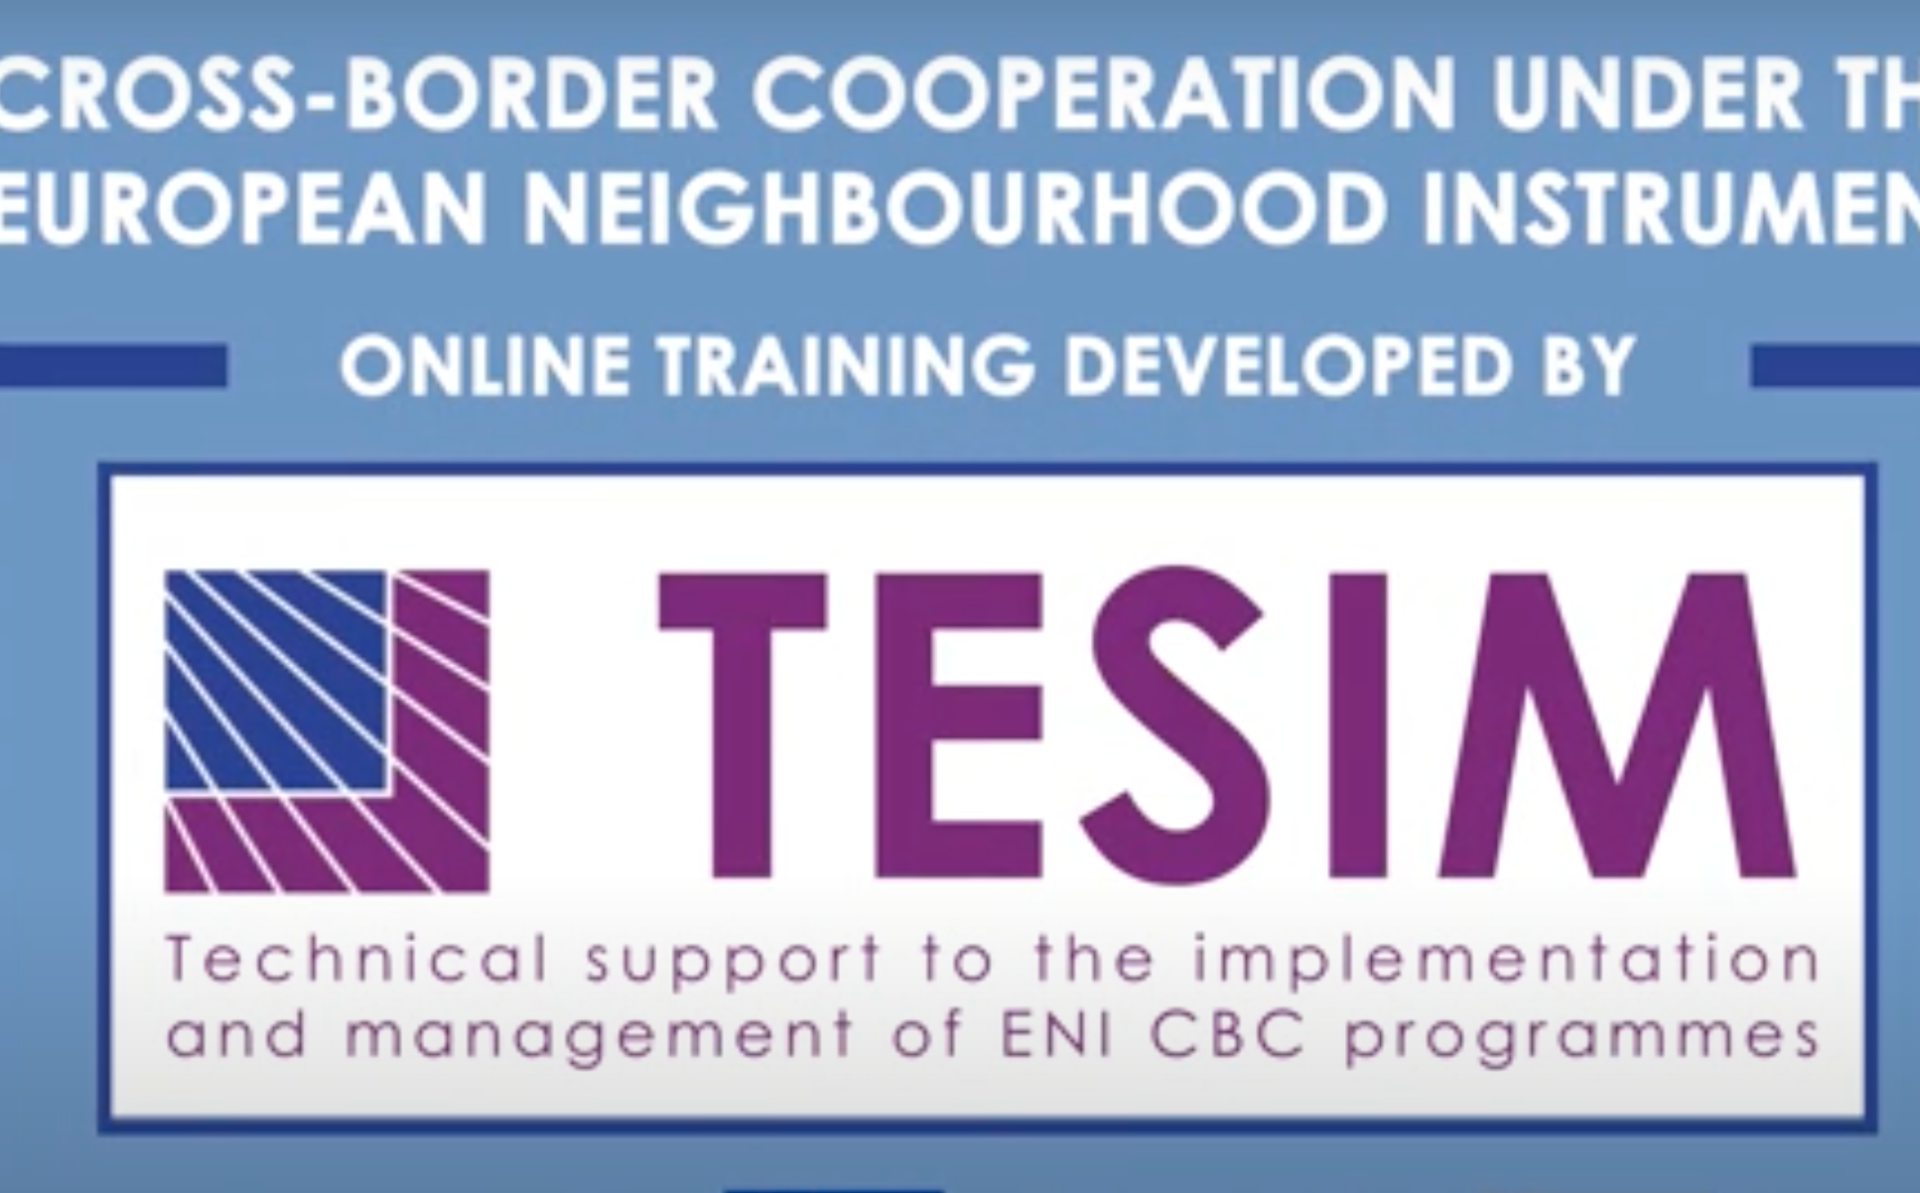 Интерактивная обучающая платформа по трансграничному сотрудничеству